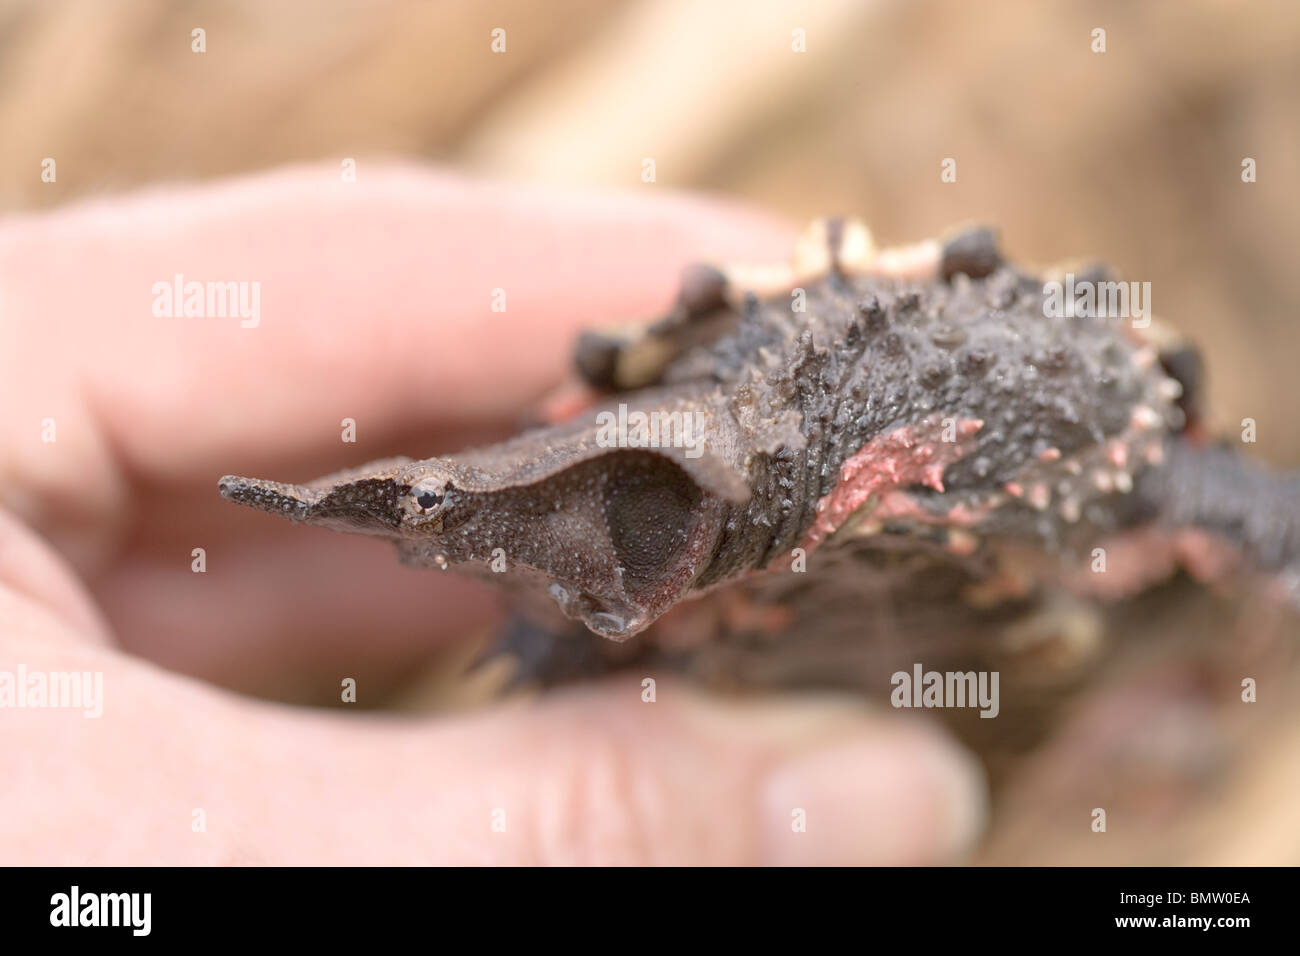 Fransenschildkröte (Chelus fimbriata). S​Ide Blick auf Kopf projizieren von der Vorderseite der Shell, mit zahlreichen Bergrücken abgedeckt. Junge Tier in der Hand hielt. Stockfoto